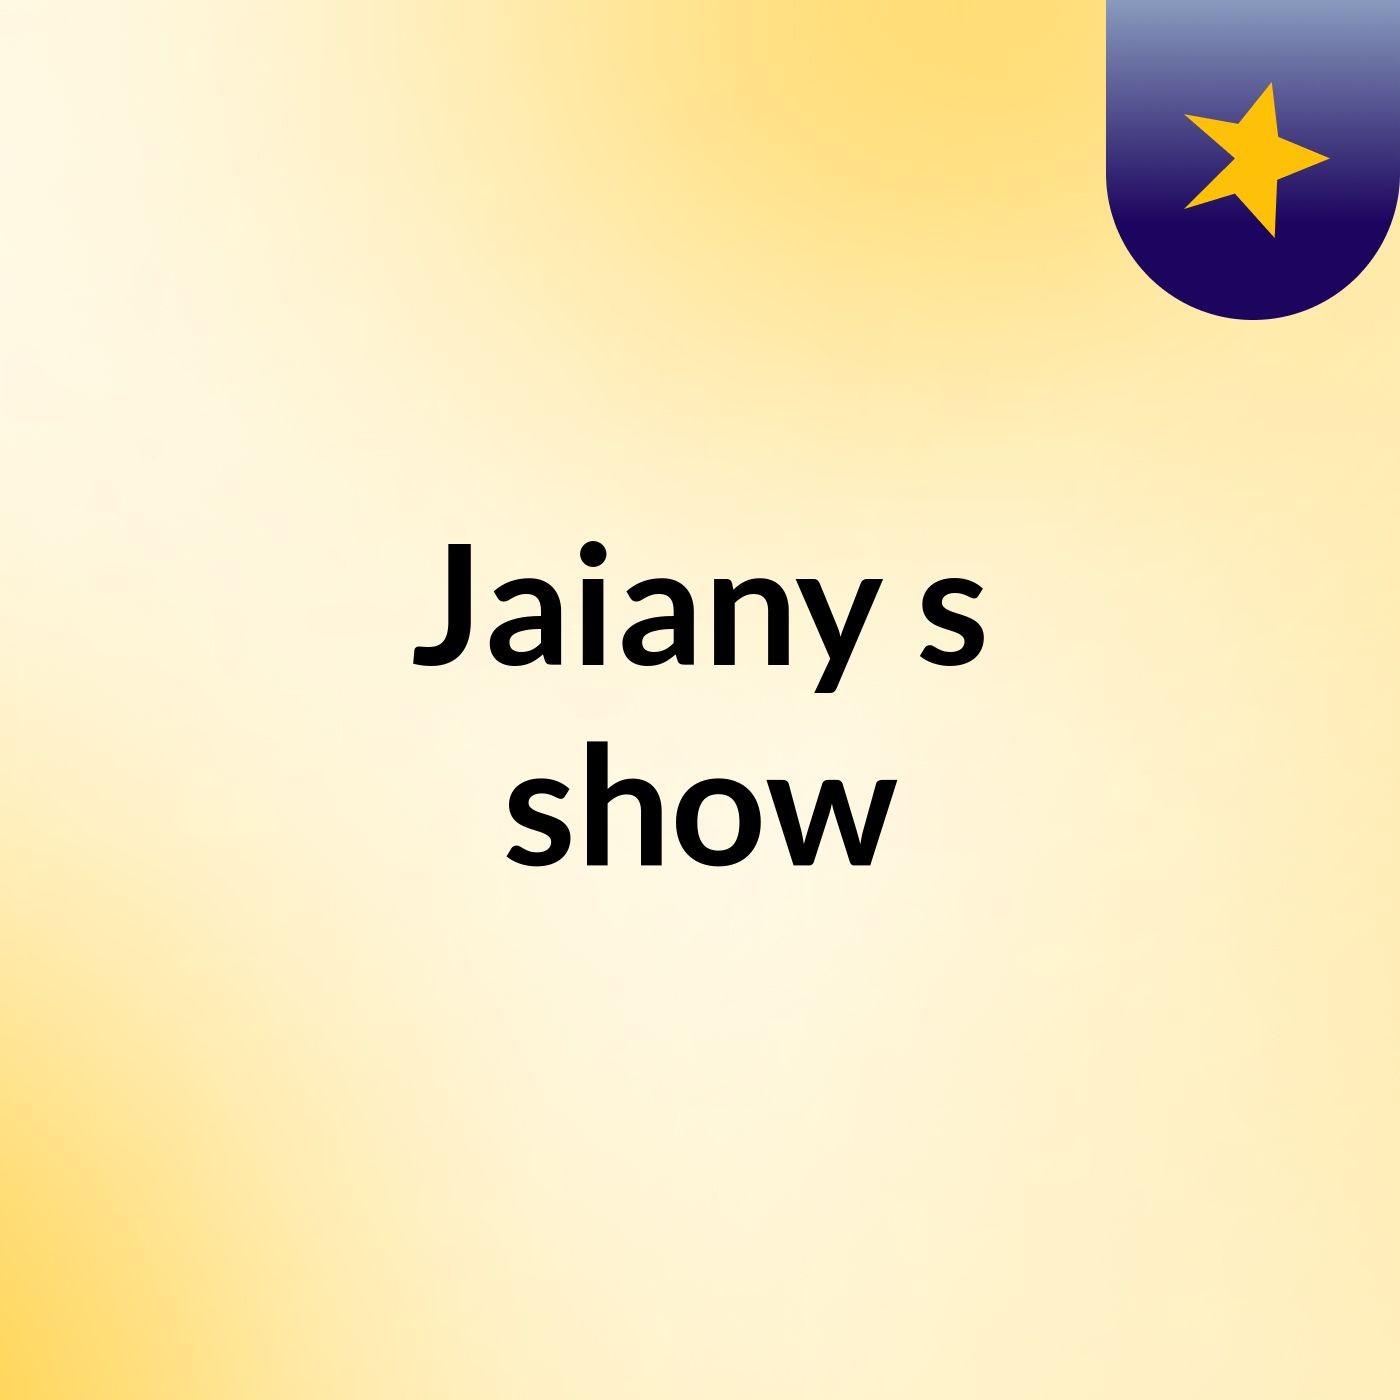 Jaiany's show